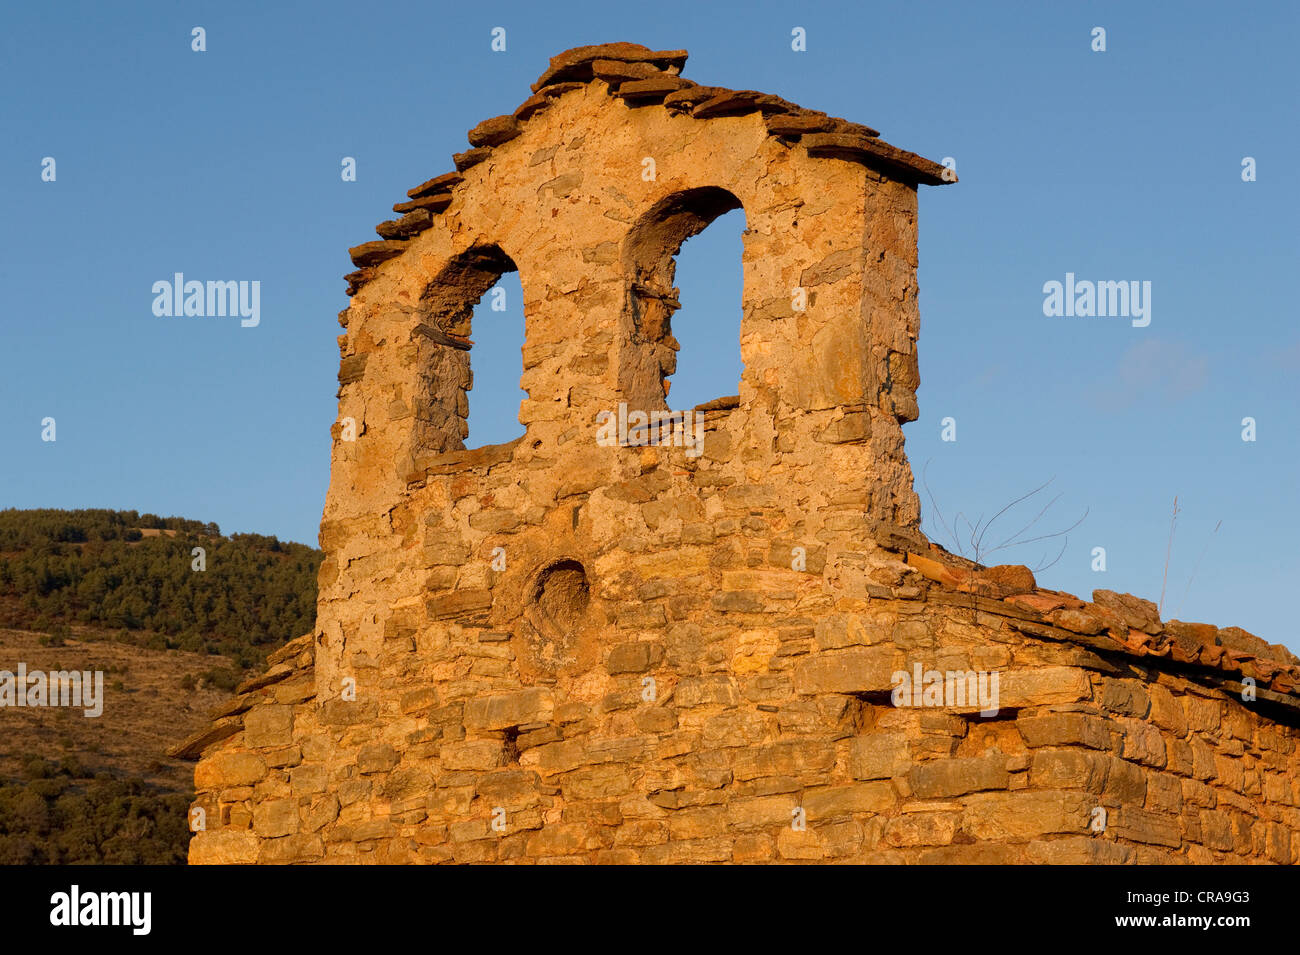 Ruine dans les Pyrénées espagnoles, l'Espagne, Europe Banque D'Images